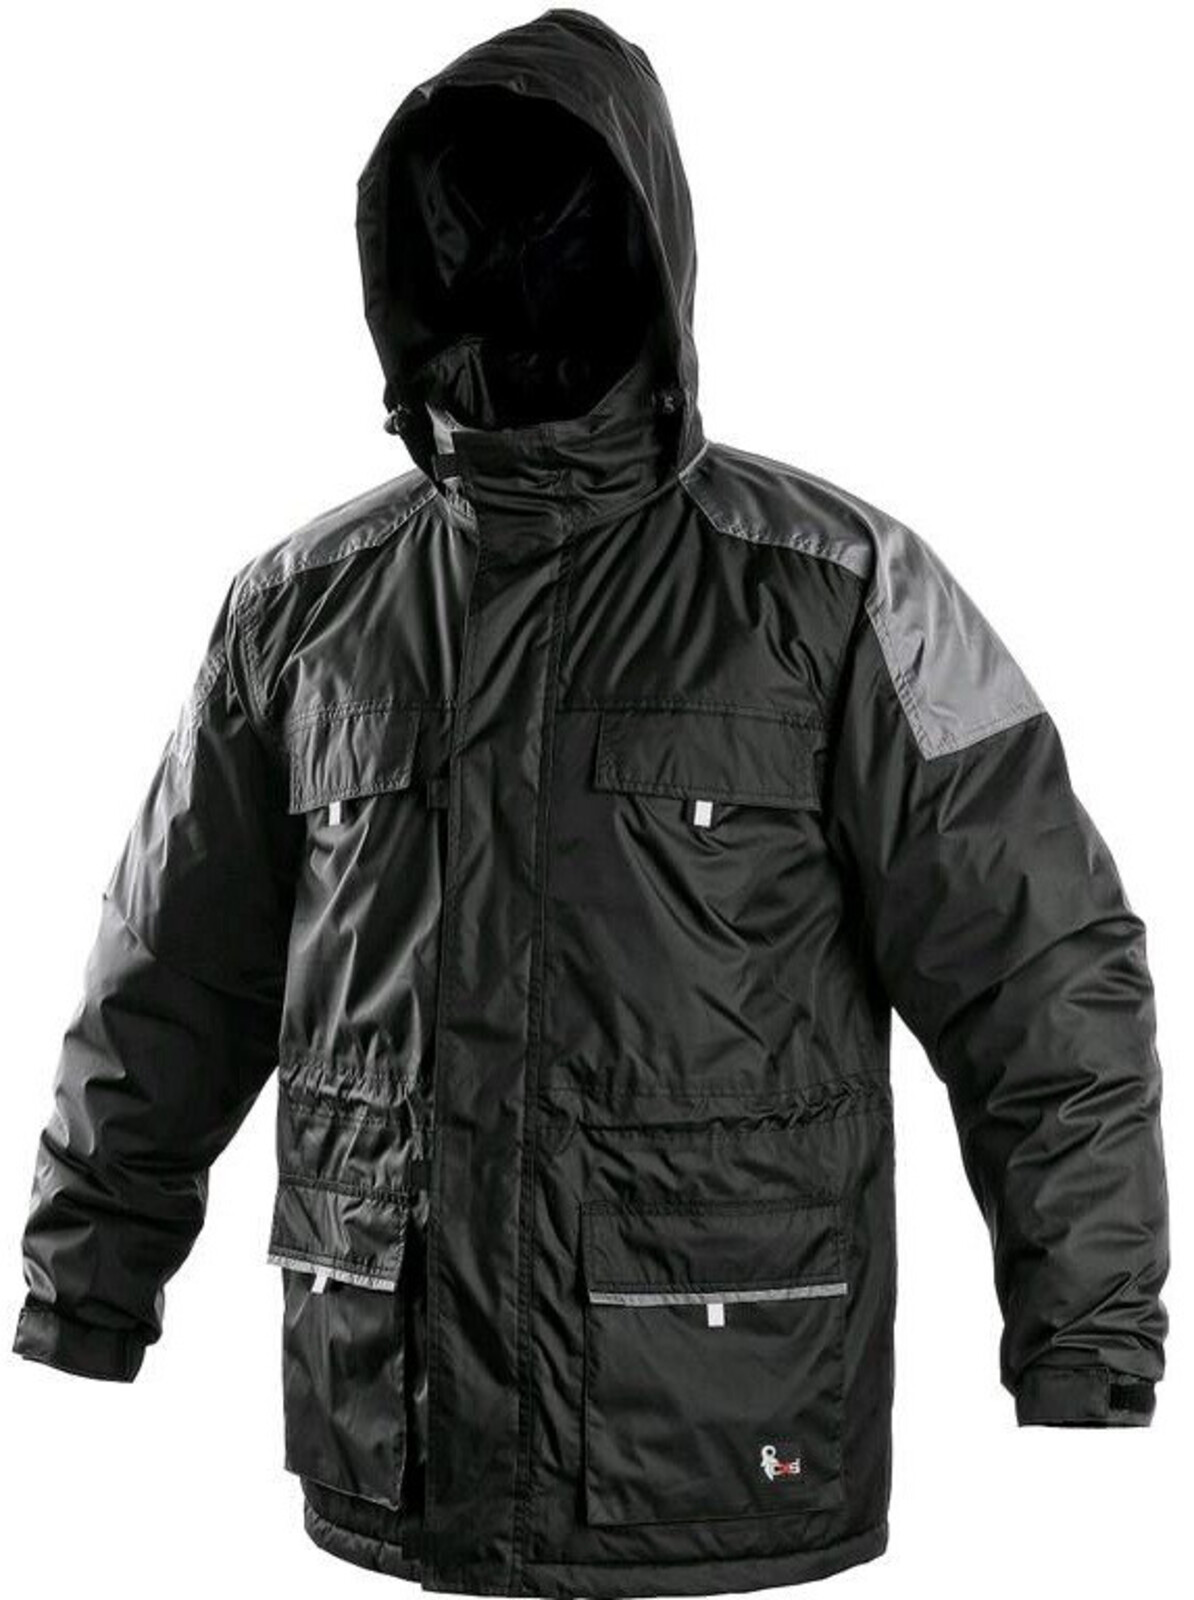 Pánska zimná bunda CXS Fremont - veľkosť: XL, farba: čierna/sivá